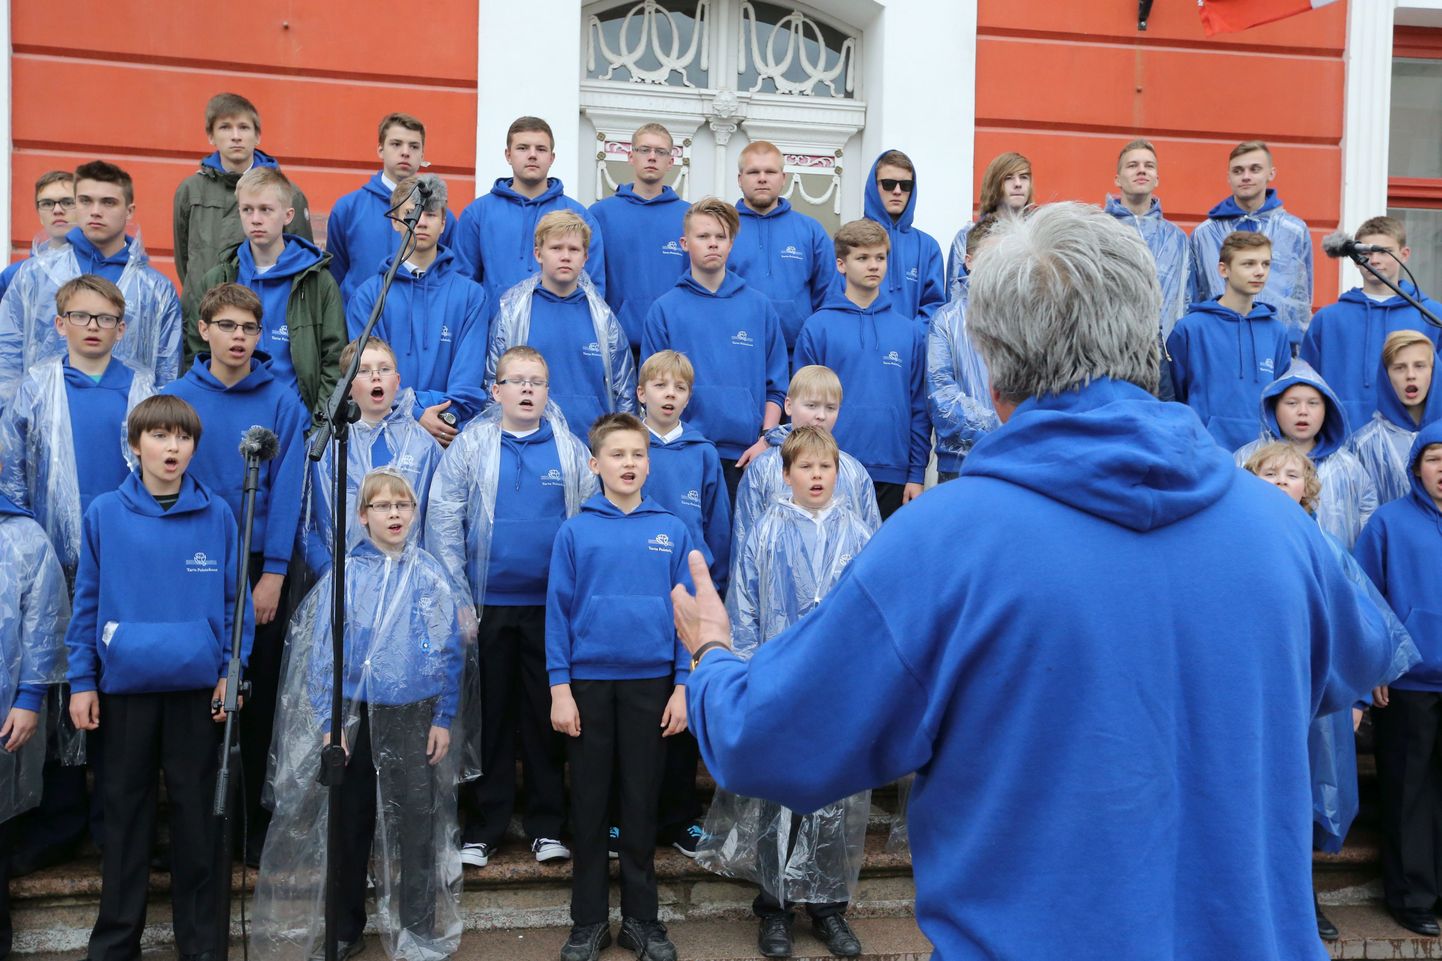 Festivali pidulikul avamisel Tartu raeplatsil laulis Tartu poistekoor, dirigeerisid Undel Kokk (pildil) ja Annelii Traks.